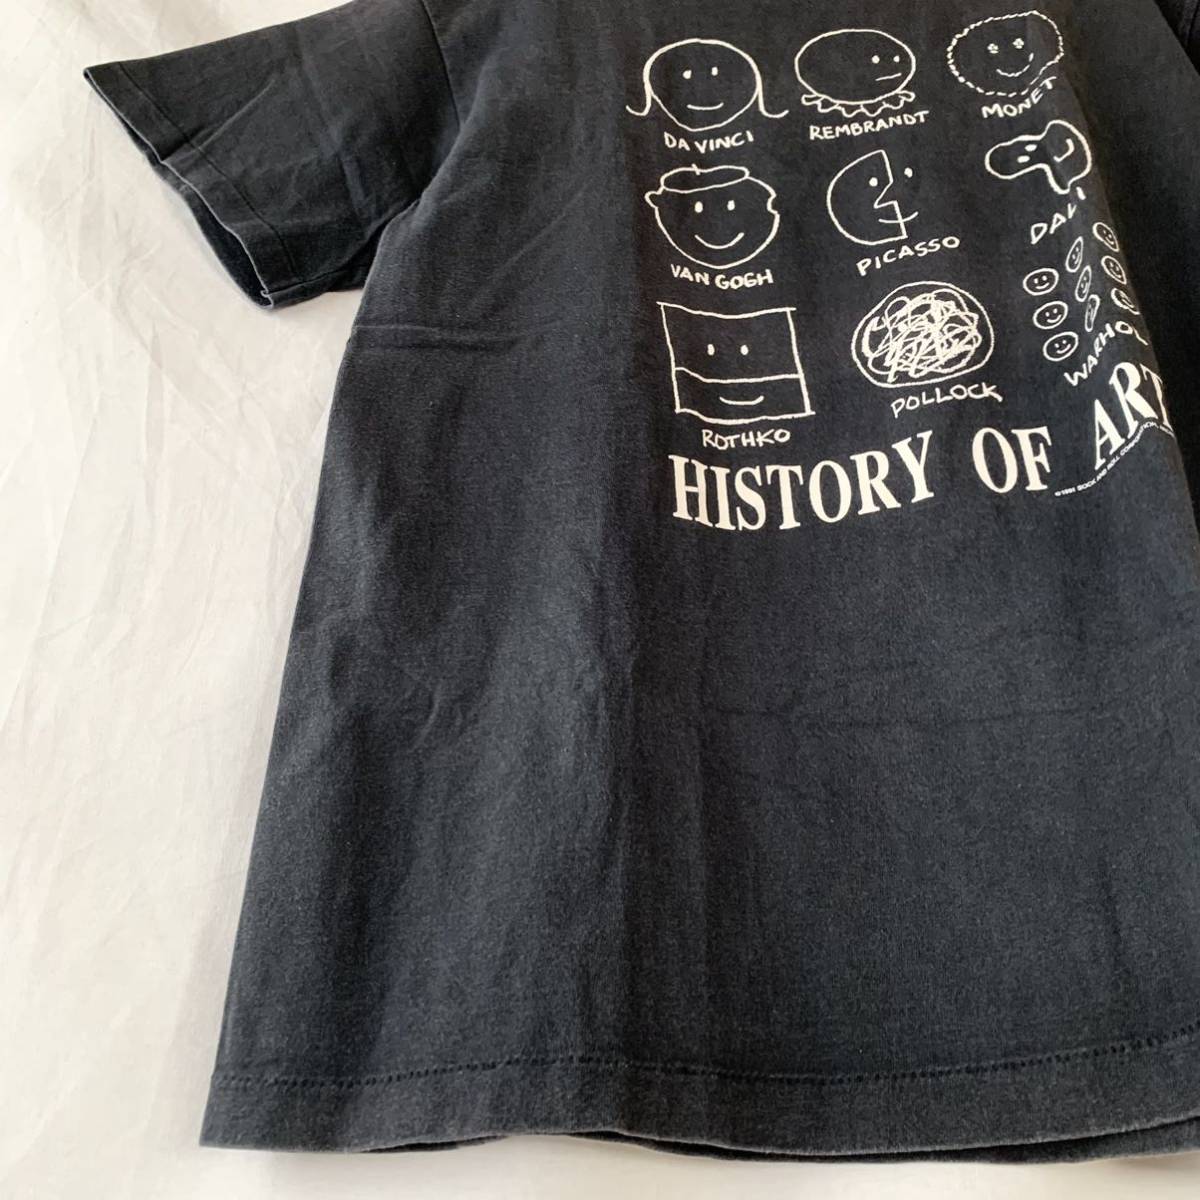 90s USA производства HISTORY OF ART Vintage искусство футболка черный чёрный Anne ti War держатель Limo nego ho Picasso da vinchi L GIANT